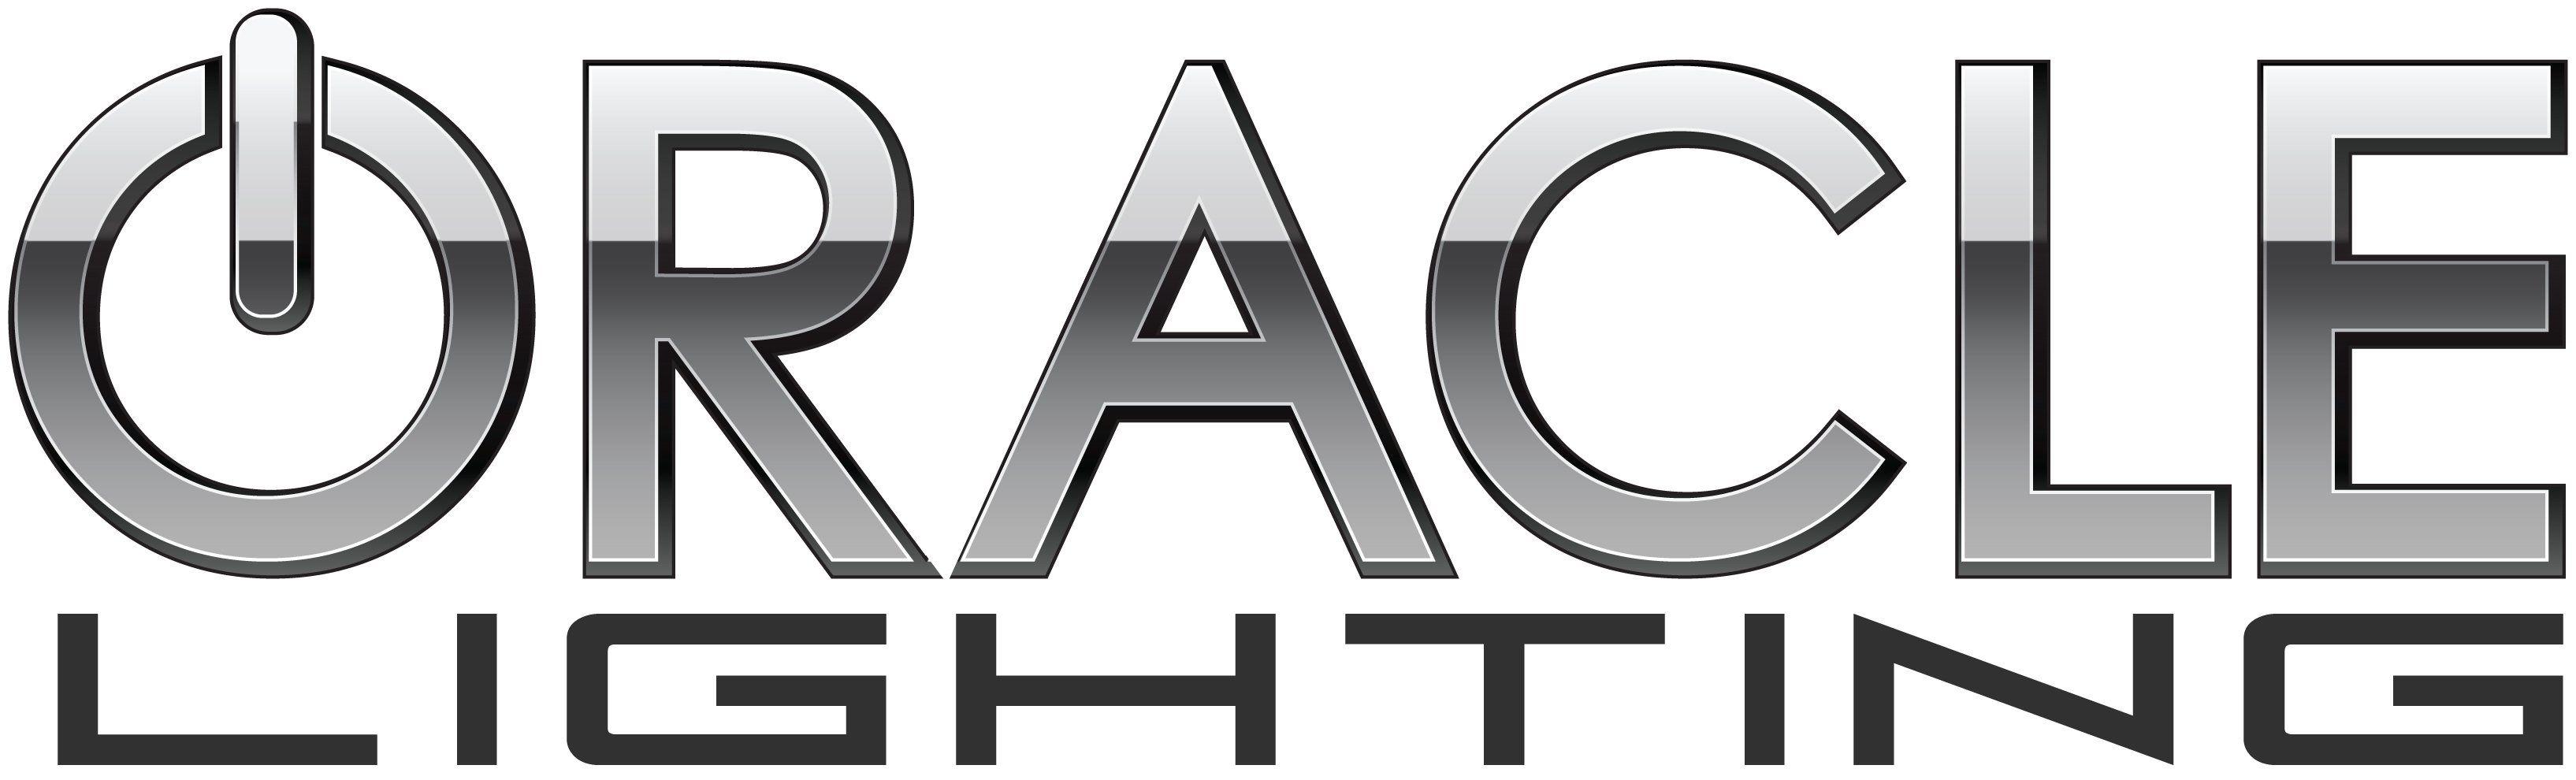 Black Oracle Logo - Oracle Logo Download – ORACLE Lighting